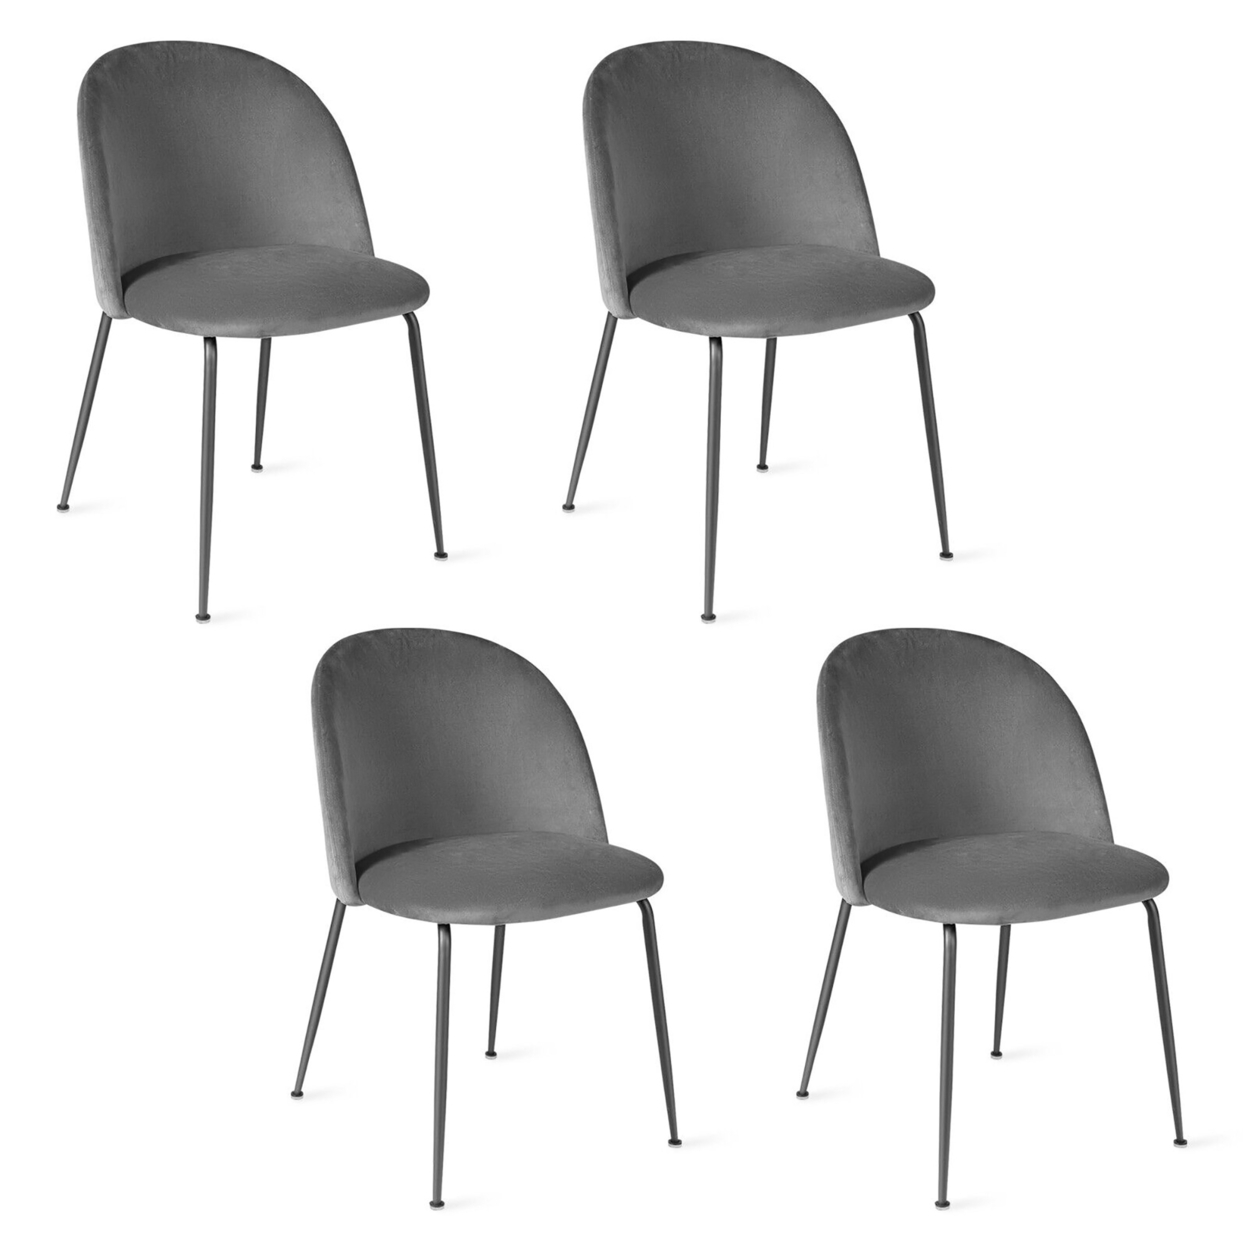 Dining Chair Set Of 4 Upholstered Velvet Chair Set W/ Metal Base For Living Room - Grey